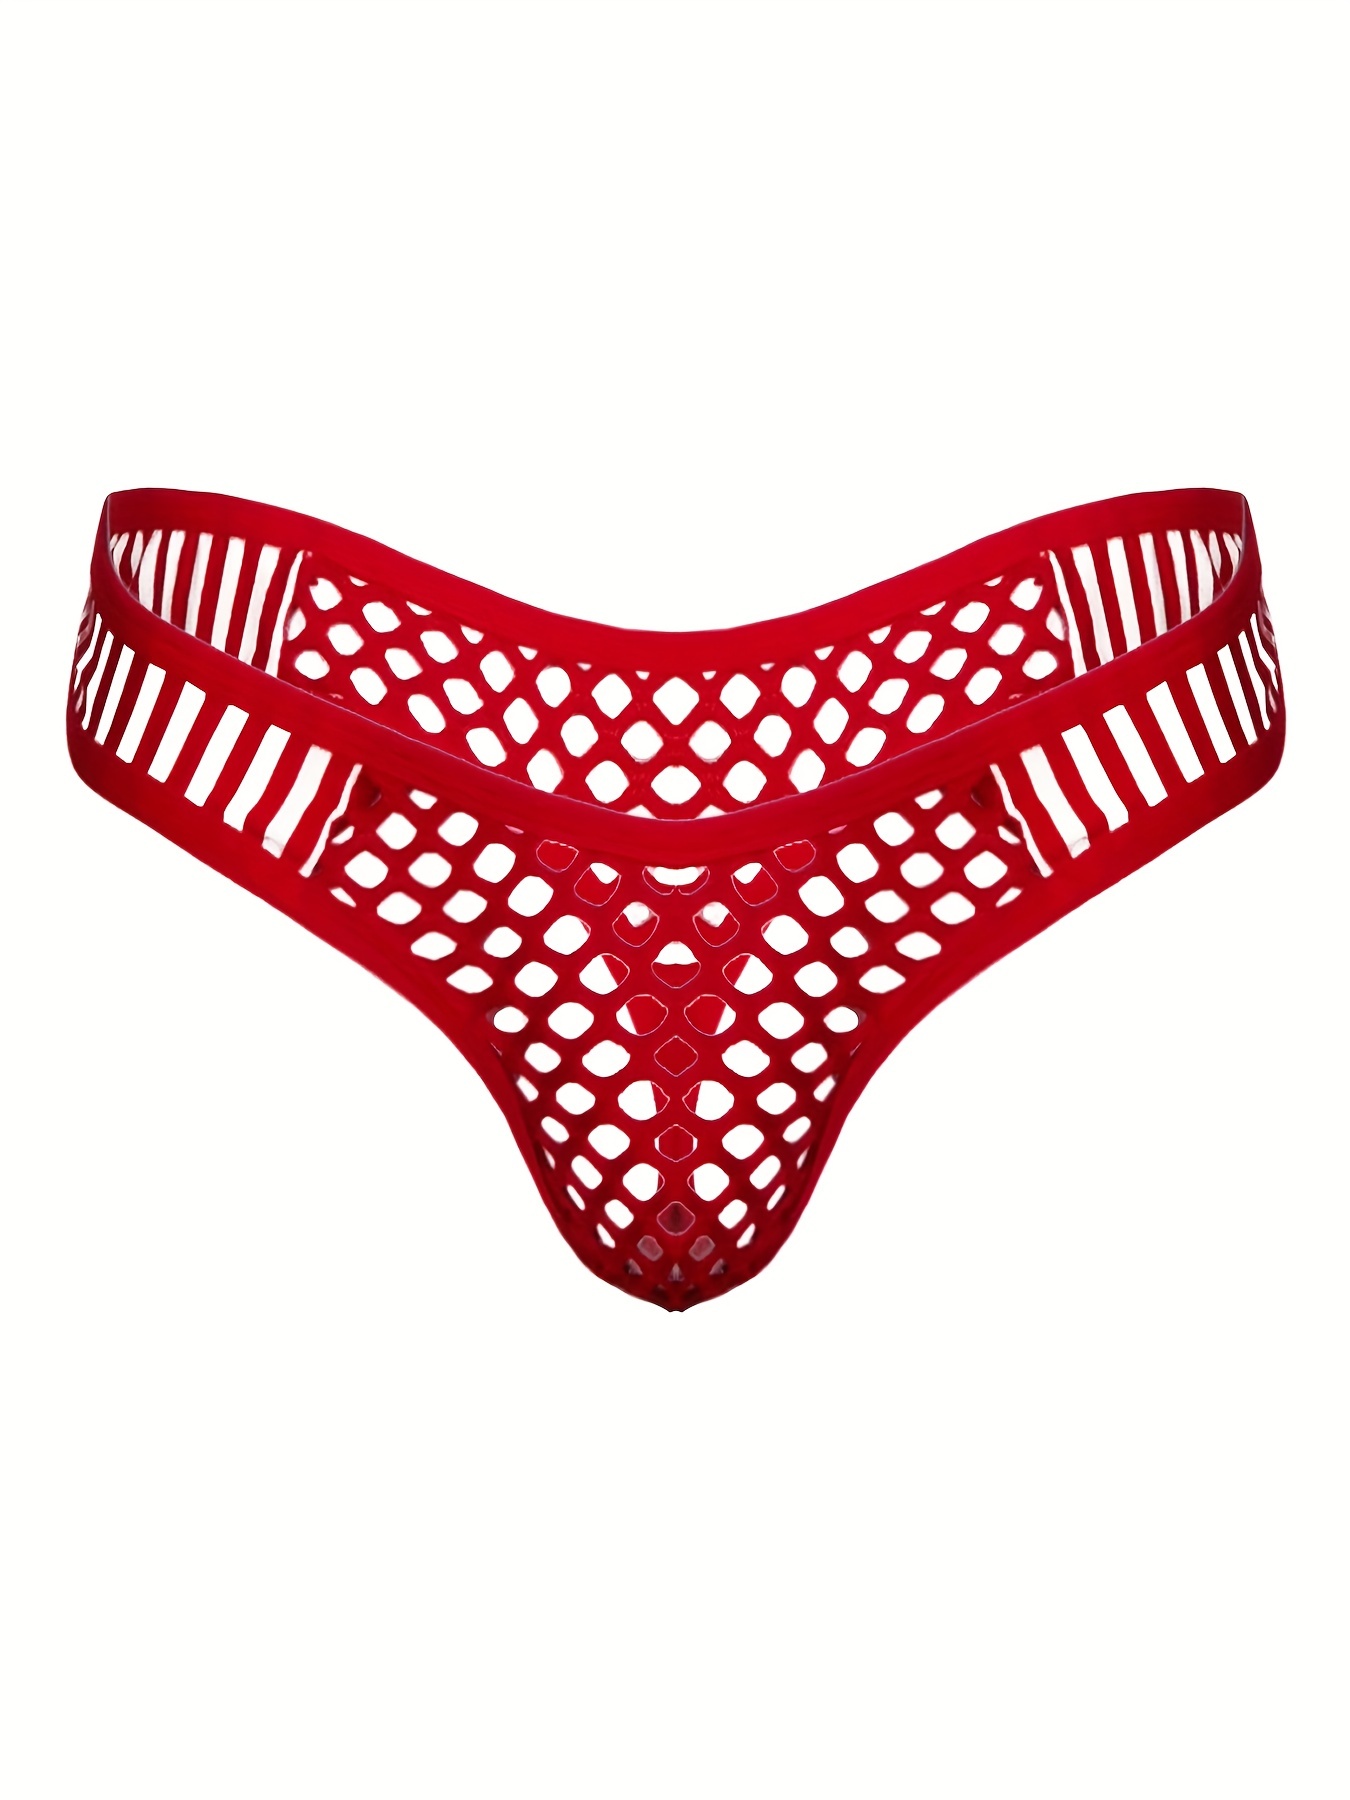 Underwear With Hole - Temu Canada